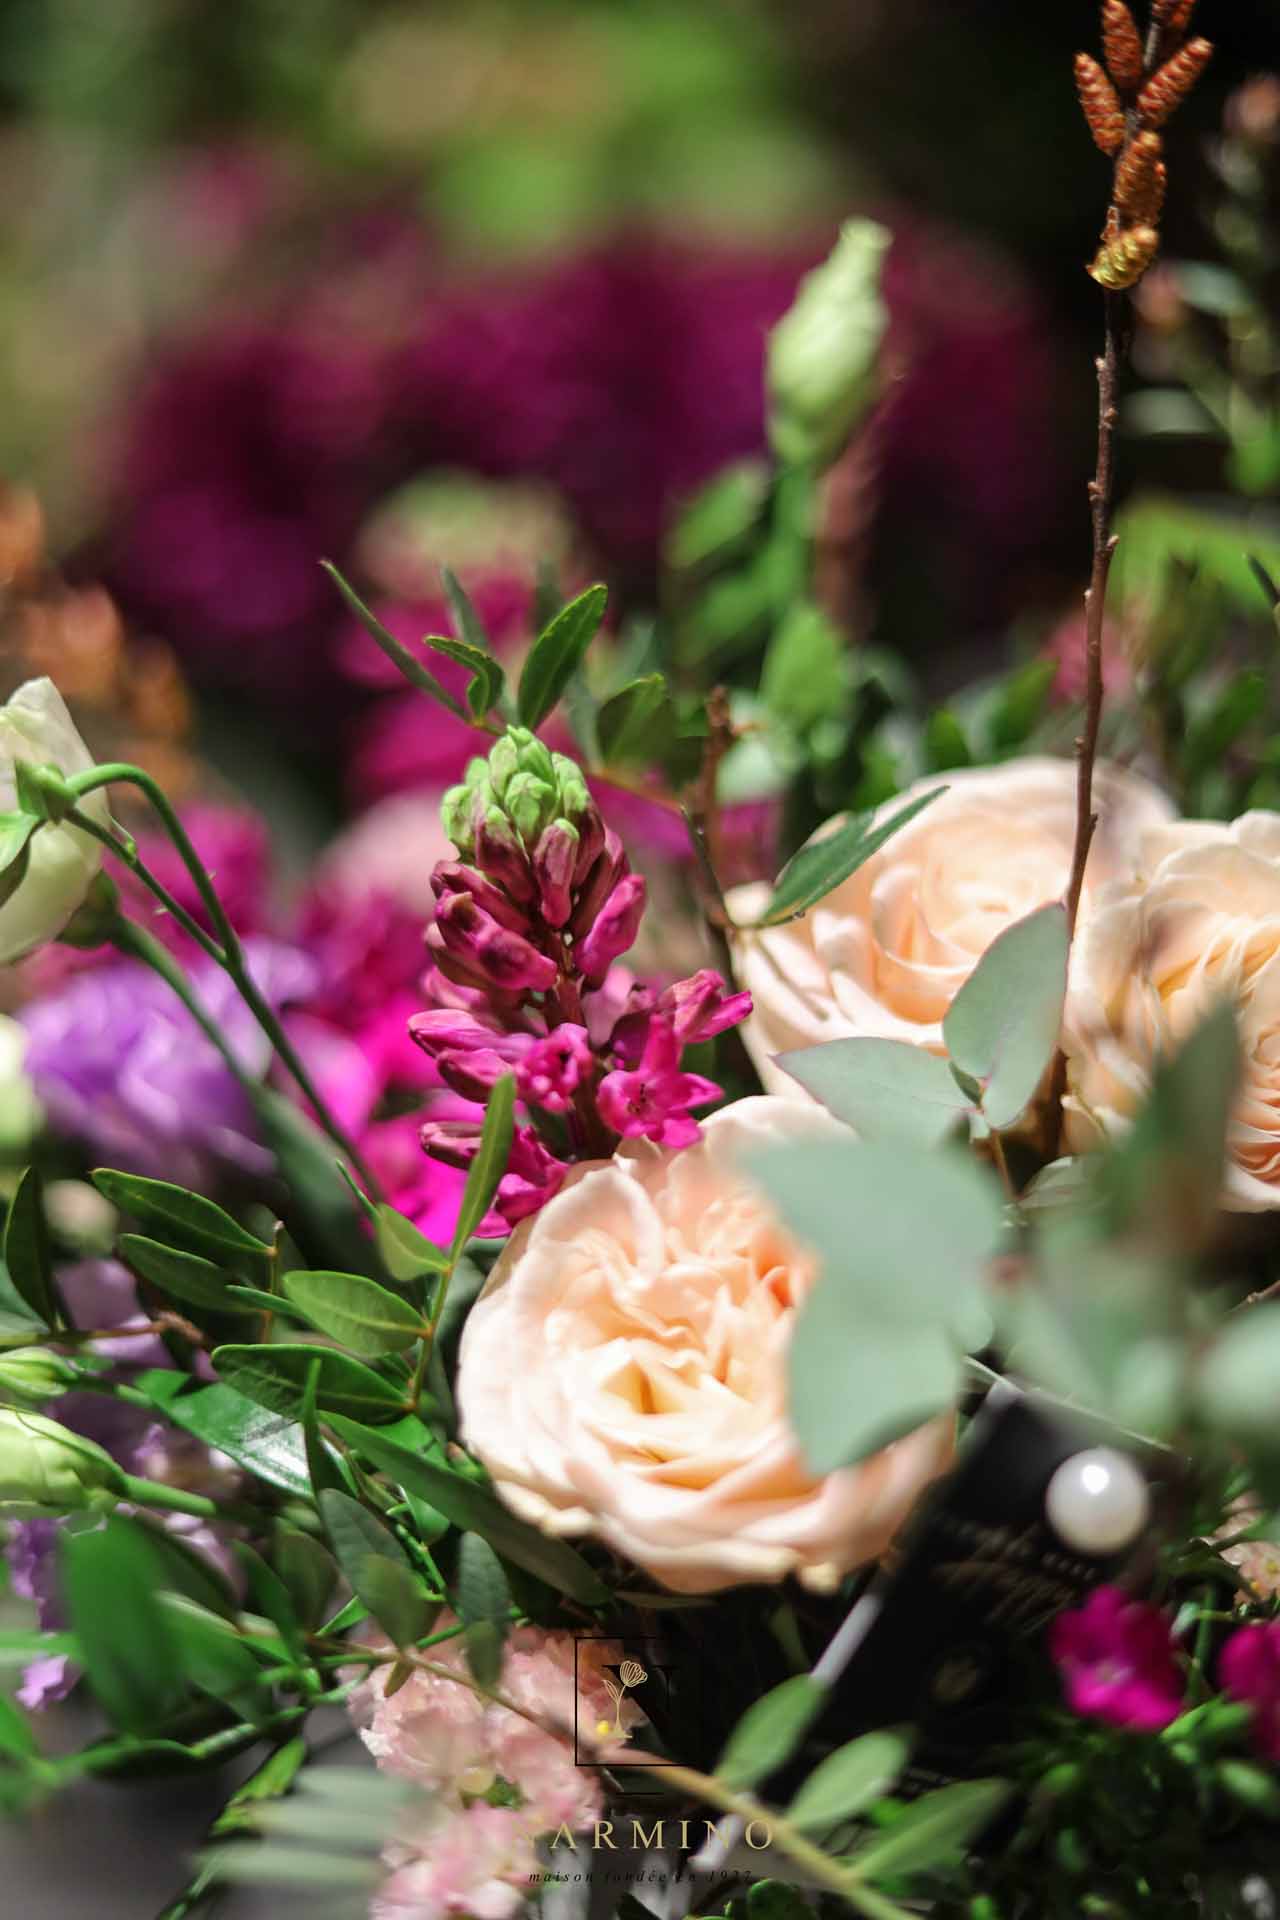 Un bouquet de fleurs pastel de la Maison Narmino